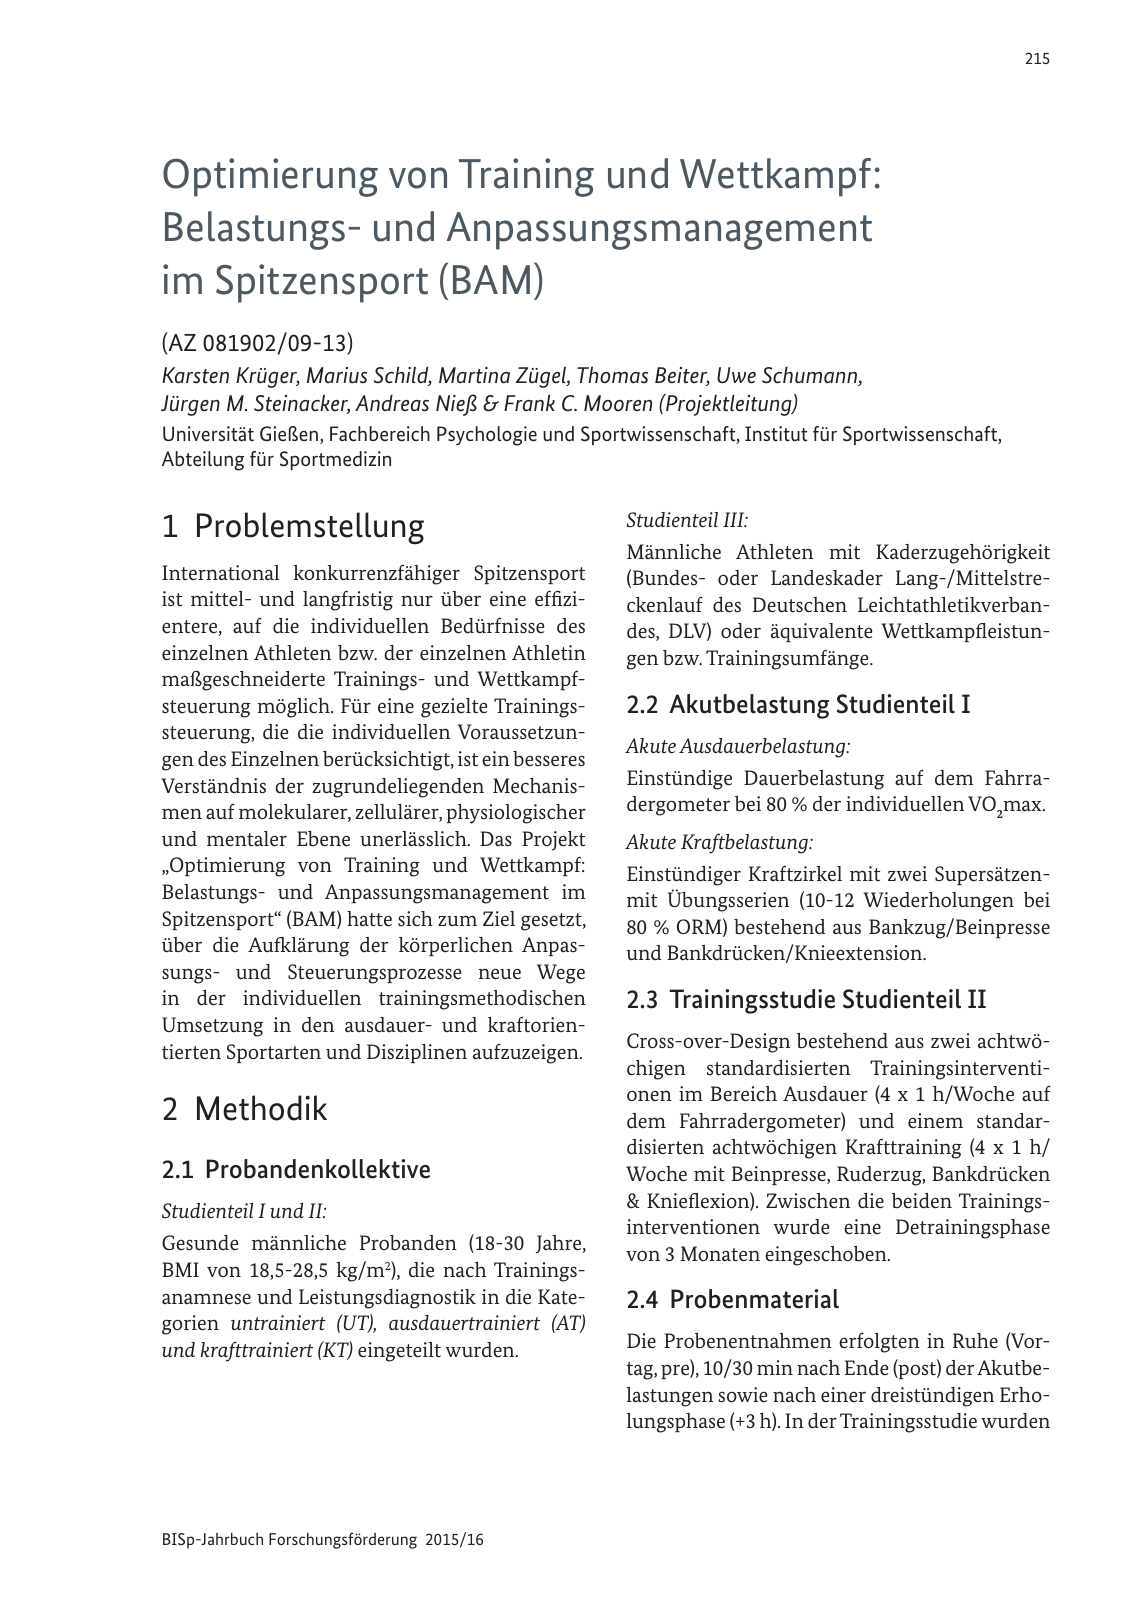 Vorschau BISp-Jahrbuch Forschungsförderung 2015/16 Seite 217